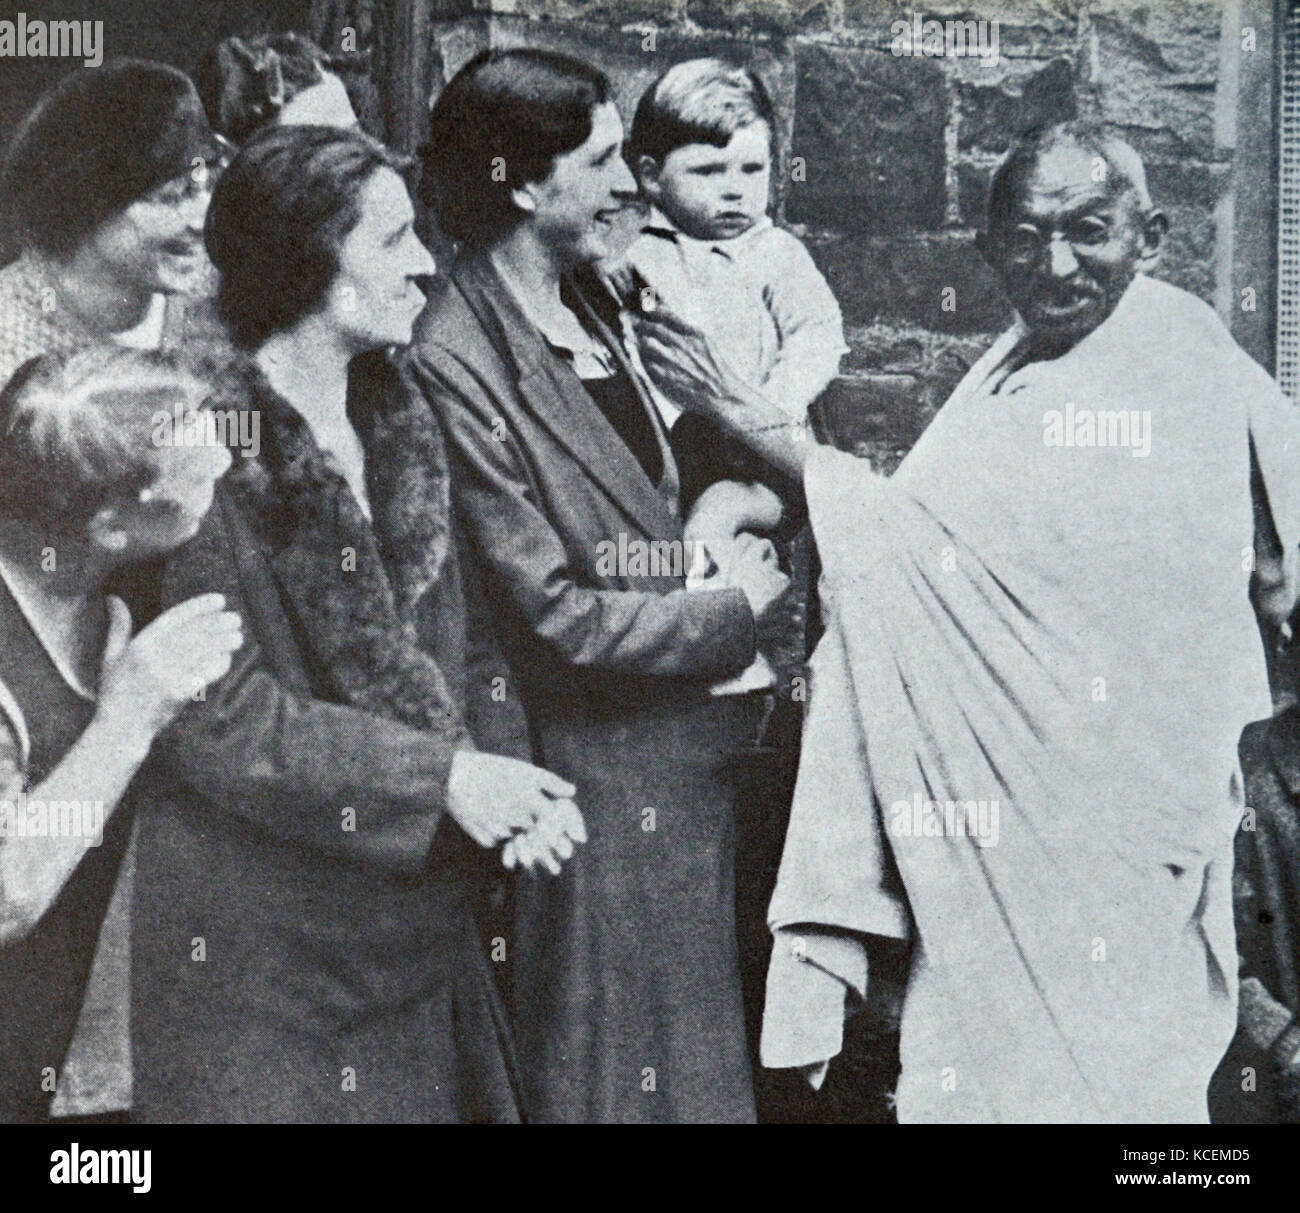 Mahatma Gandhi les filatures de coton du Lancashire visites en 1931, au cours de sa tournée en Angleterre. Mohandas Gandhi (1869 - 1948) était le principal leader de l'indépendance de l'Inde en mouvement a décidé de l'Inde. Banque D'Images